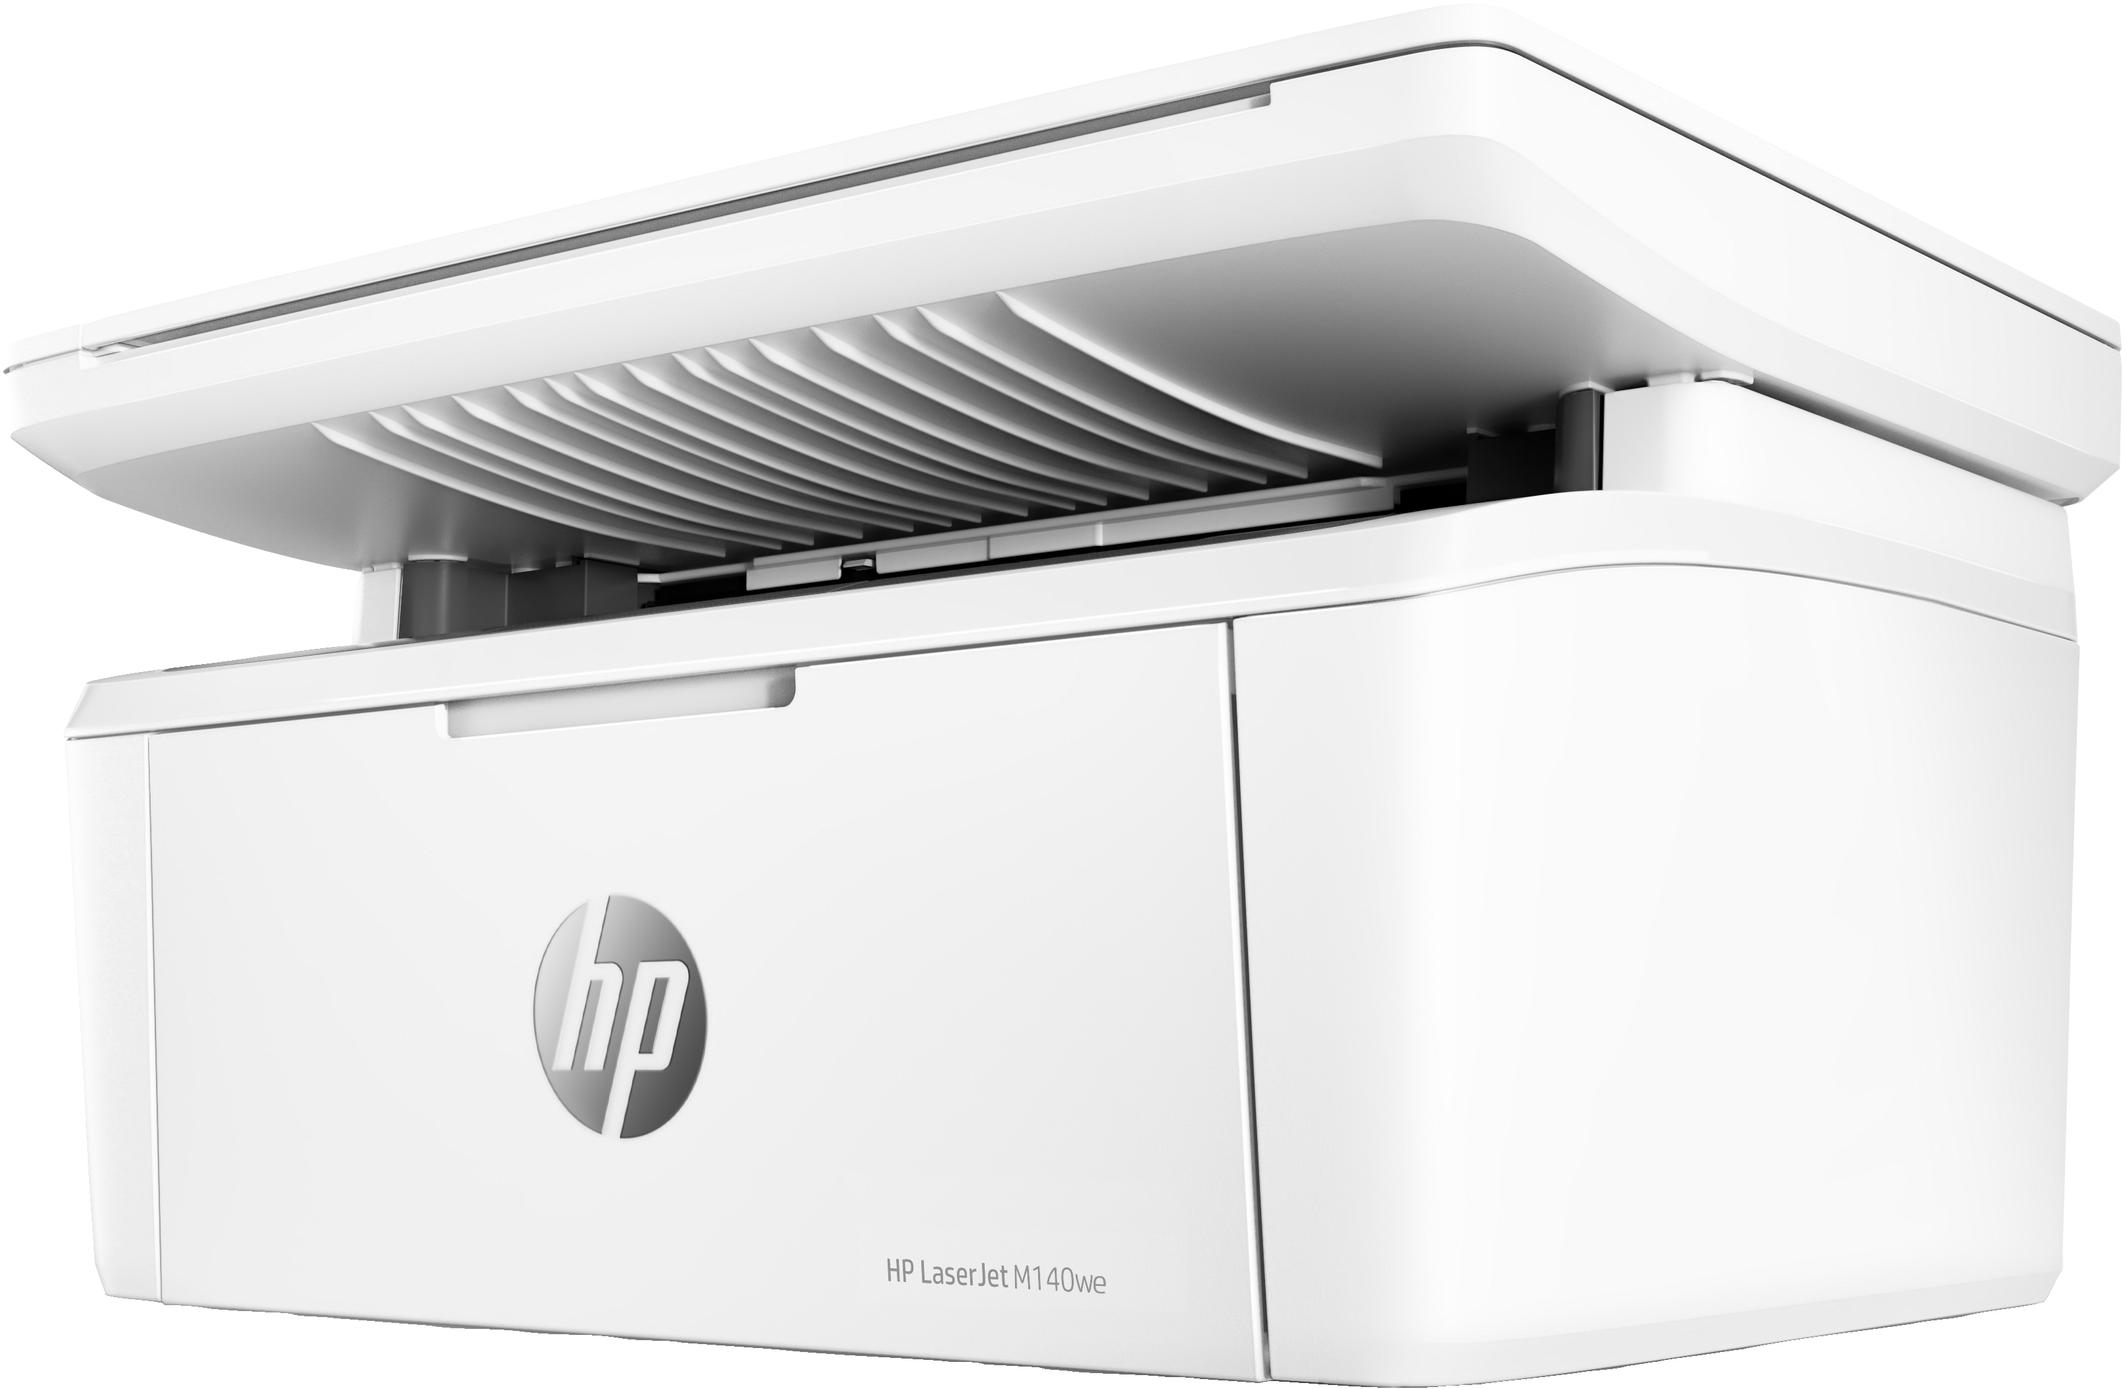 Offerta per HP - LaserJet Stampante multifunzione HP M140we, Bianco e nero, Stampante per Piccoli uffici, Stampa, copia, scansione, wireless; HP+; Idonea a HP Instant Ink; Scansione a e-mail a 119€ in Euronics